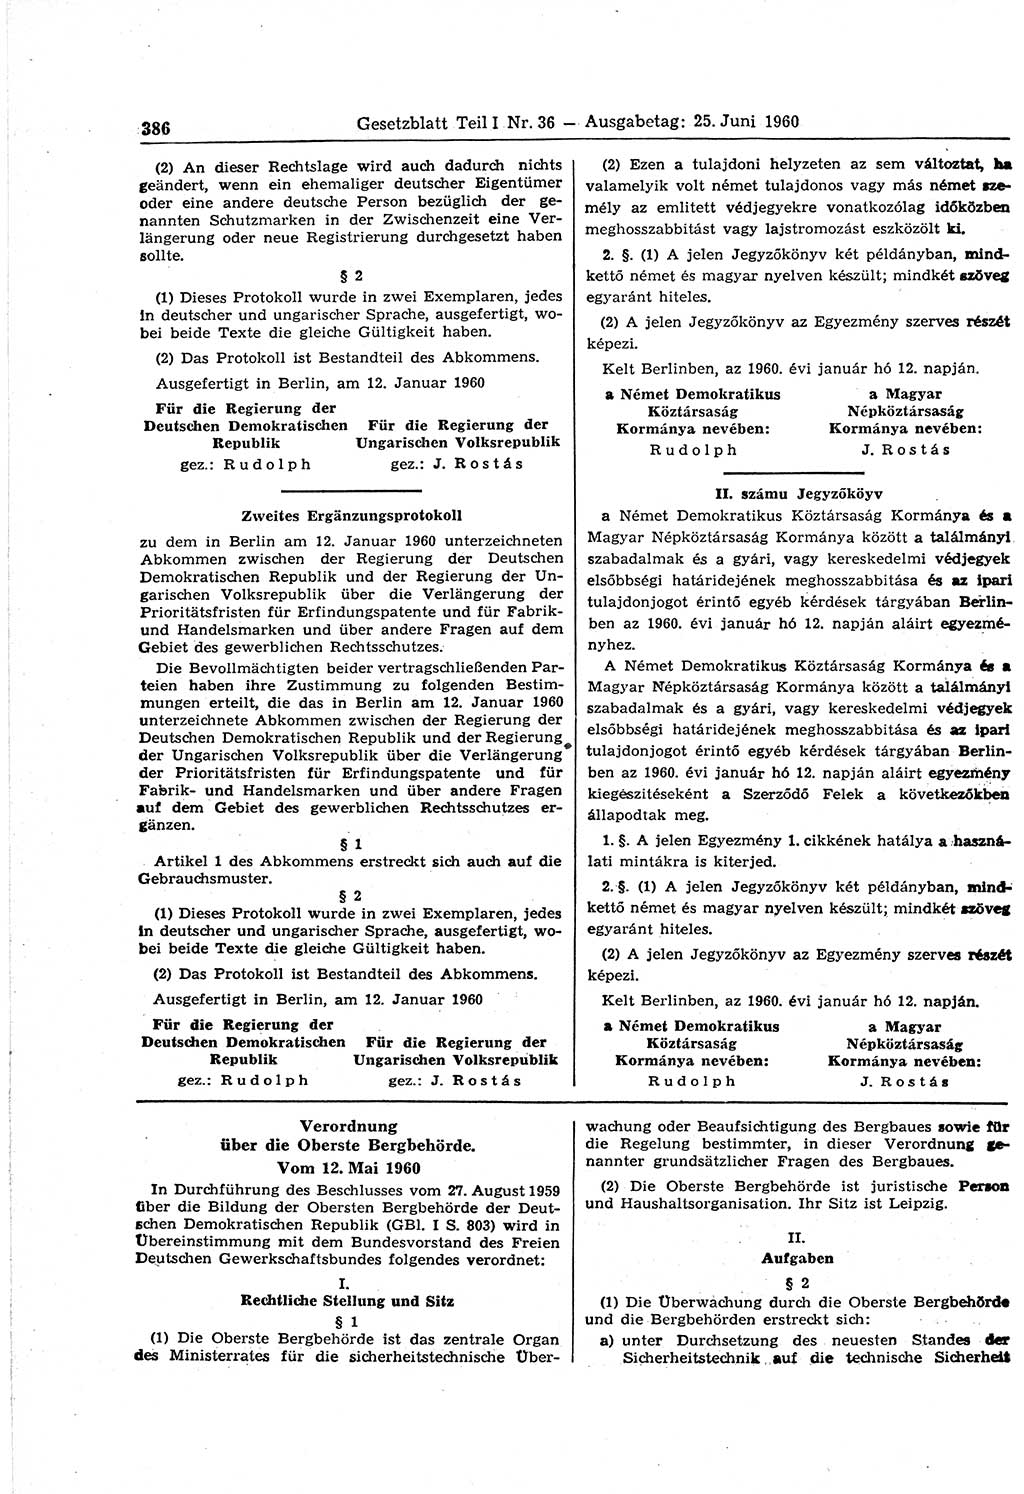 Gesetzblatt (GBl.) der Deutschen Demokratischen Republik (DDR) Teil Ⅰ 1960, Seite 386 (GBl. DDR Ⅰ 1960, S. 386)